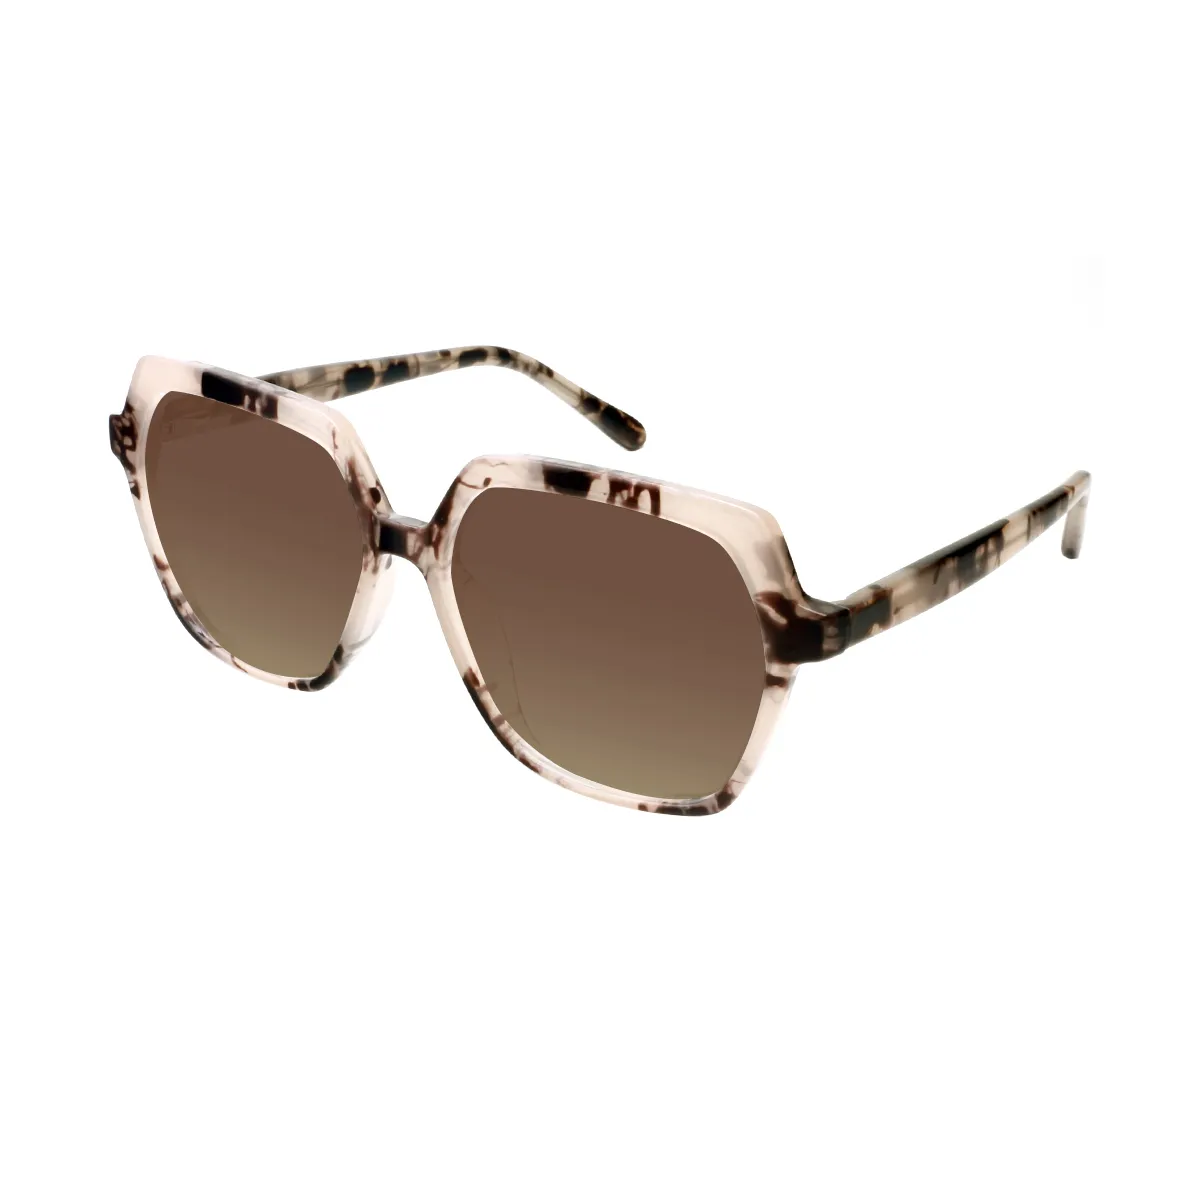 Faulkner - Square Tortoiseshell Sunglasses for Women